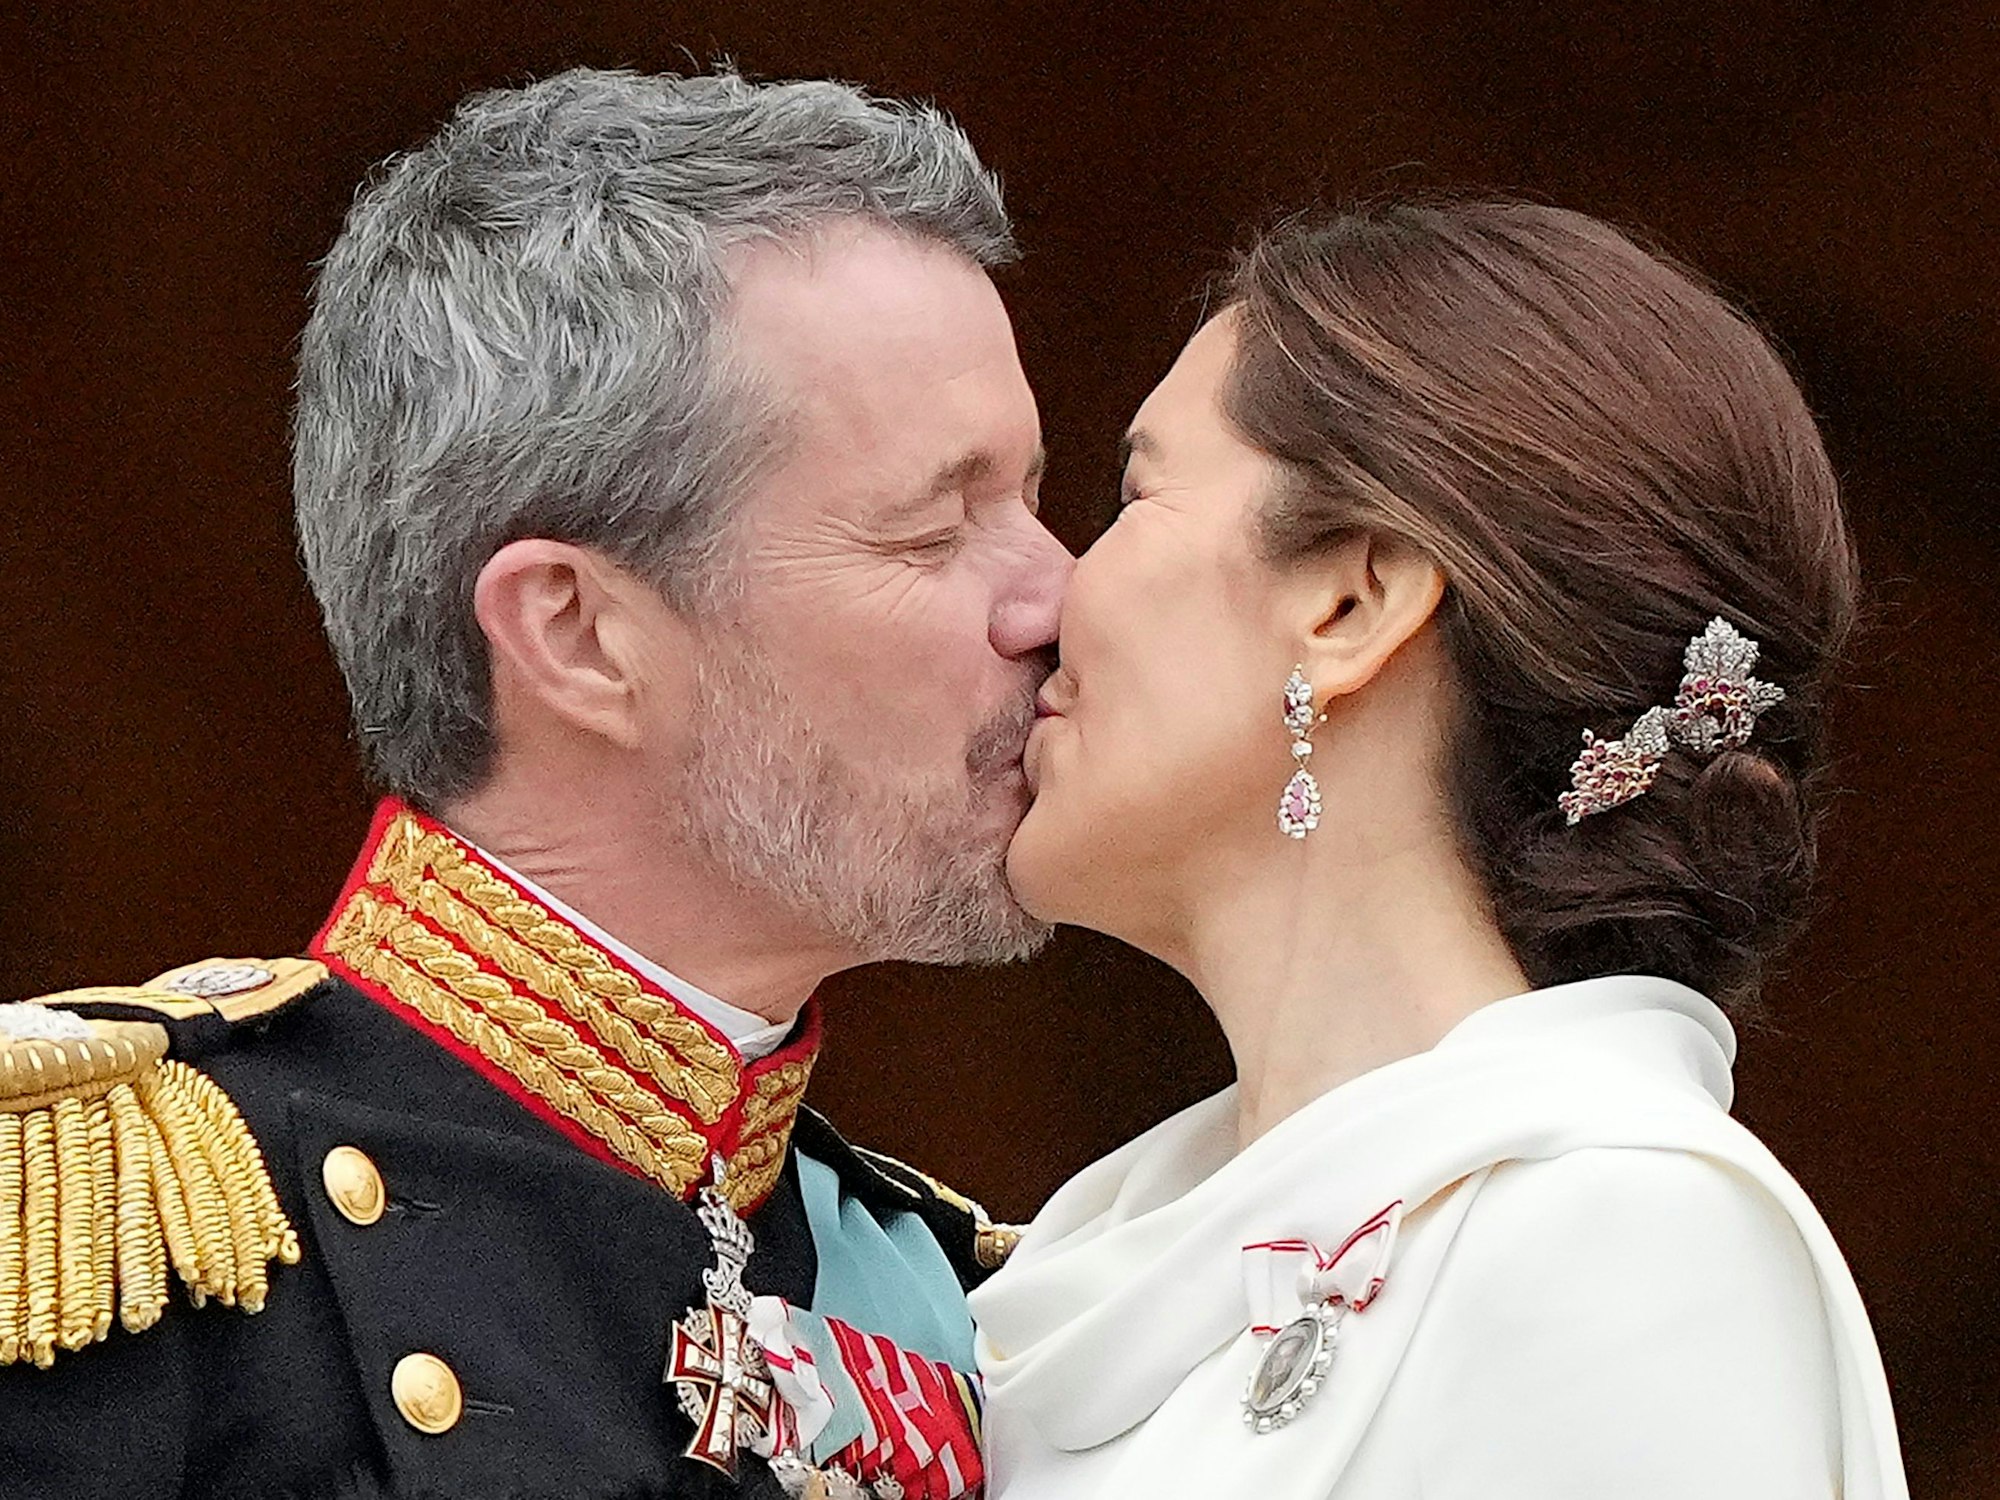 Dänemarks König Frederik X. küsst seine Frau, Dänemarks neue Königin Mary.